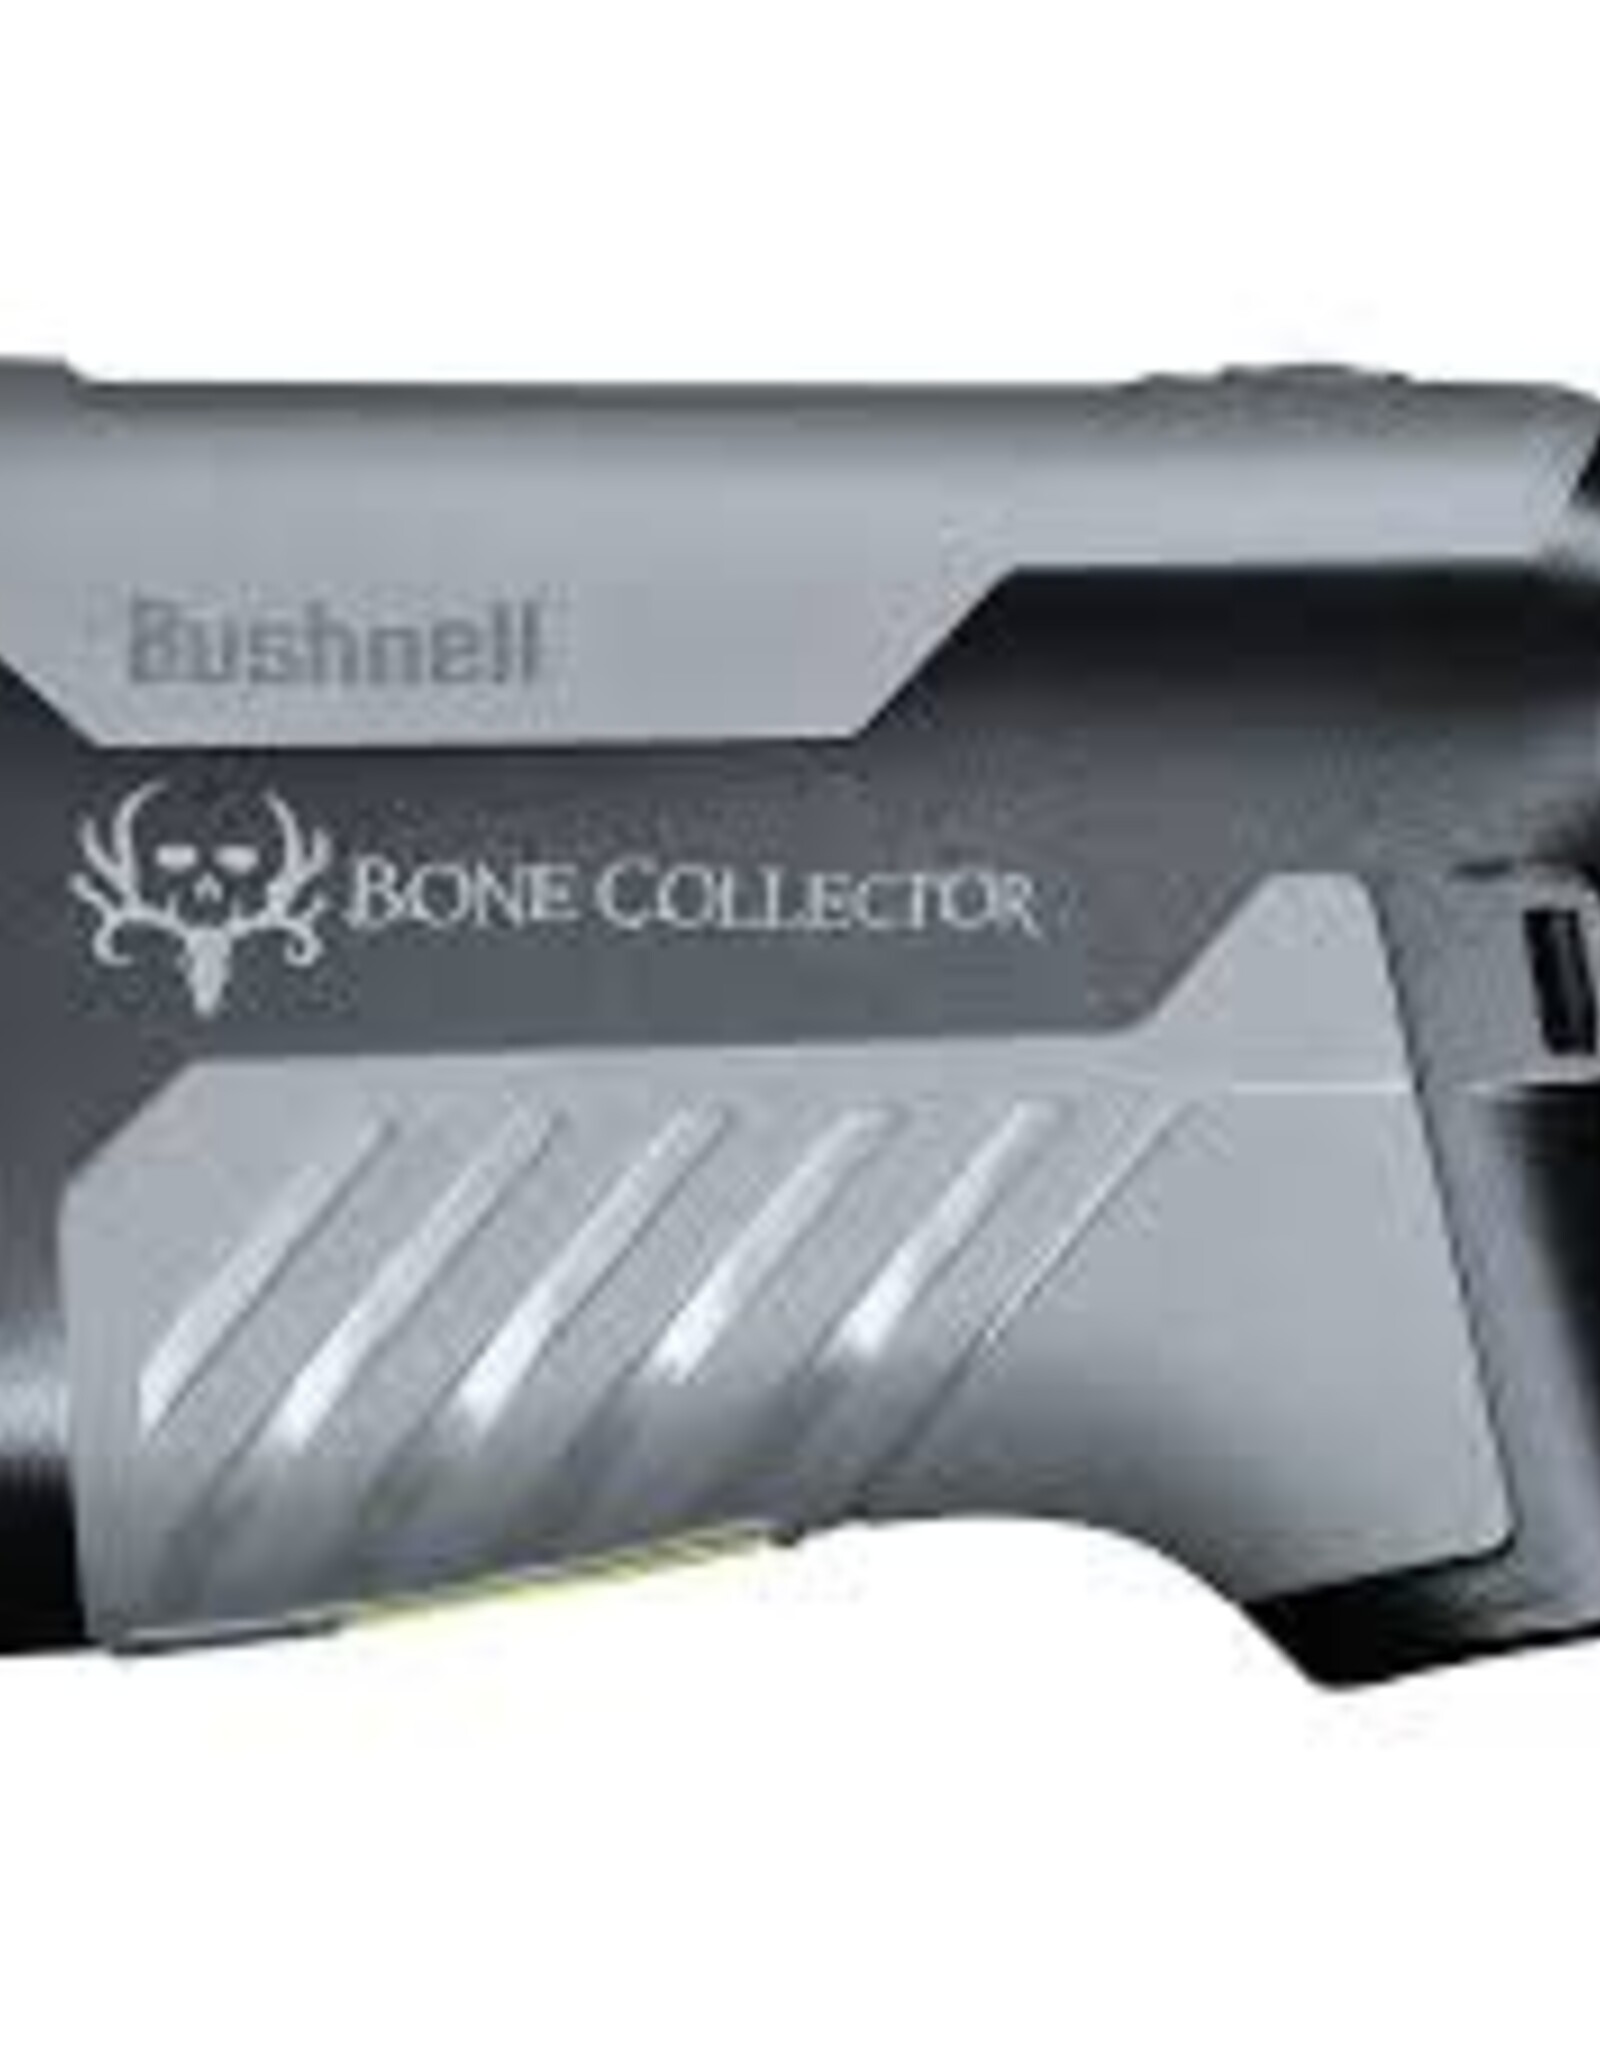 Bushnell Bone Collector 6x25mm Rangefinder